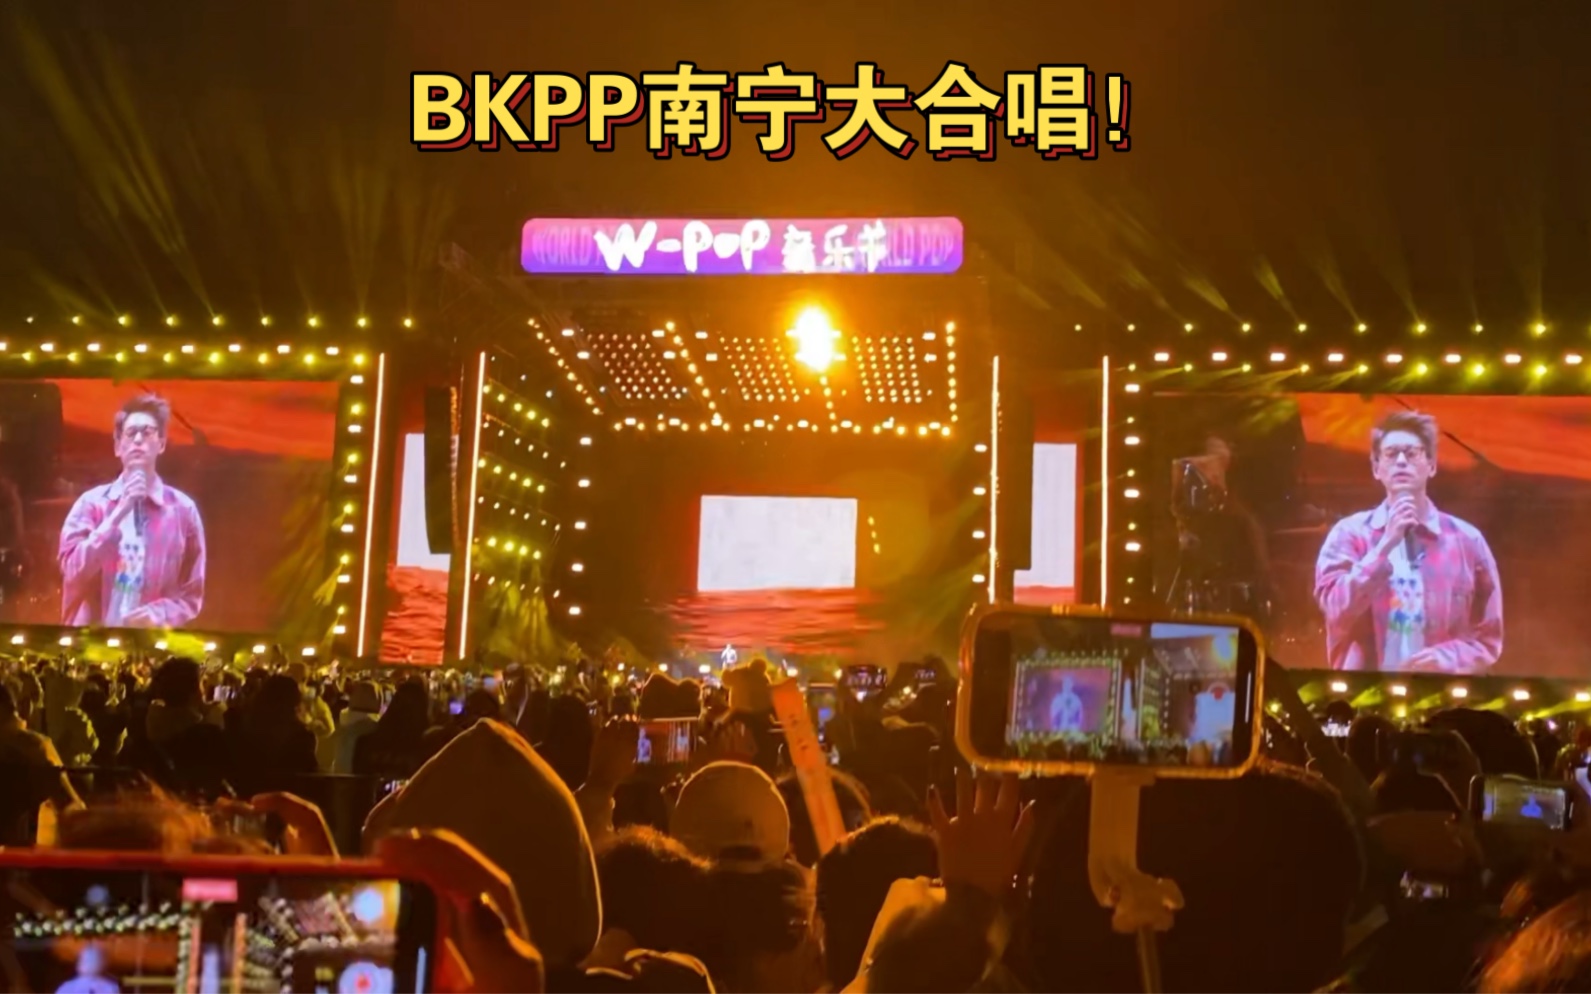 BKPP南宁音乐节！现场大合唱《如何》